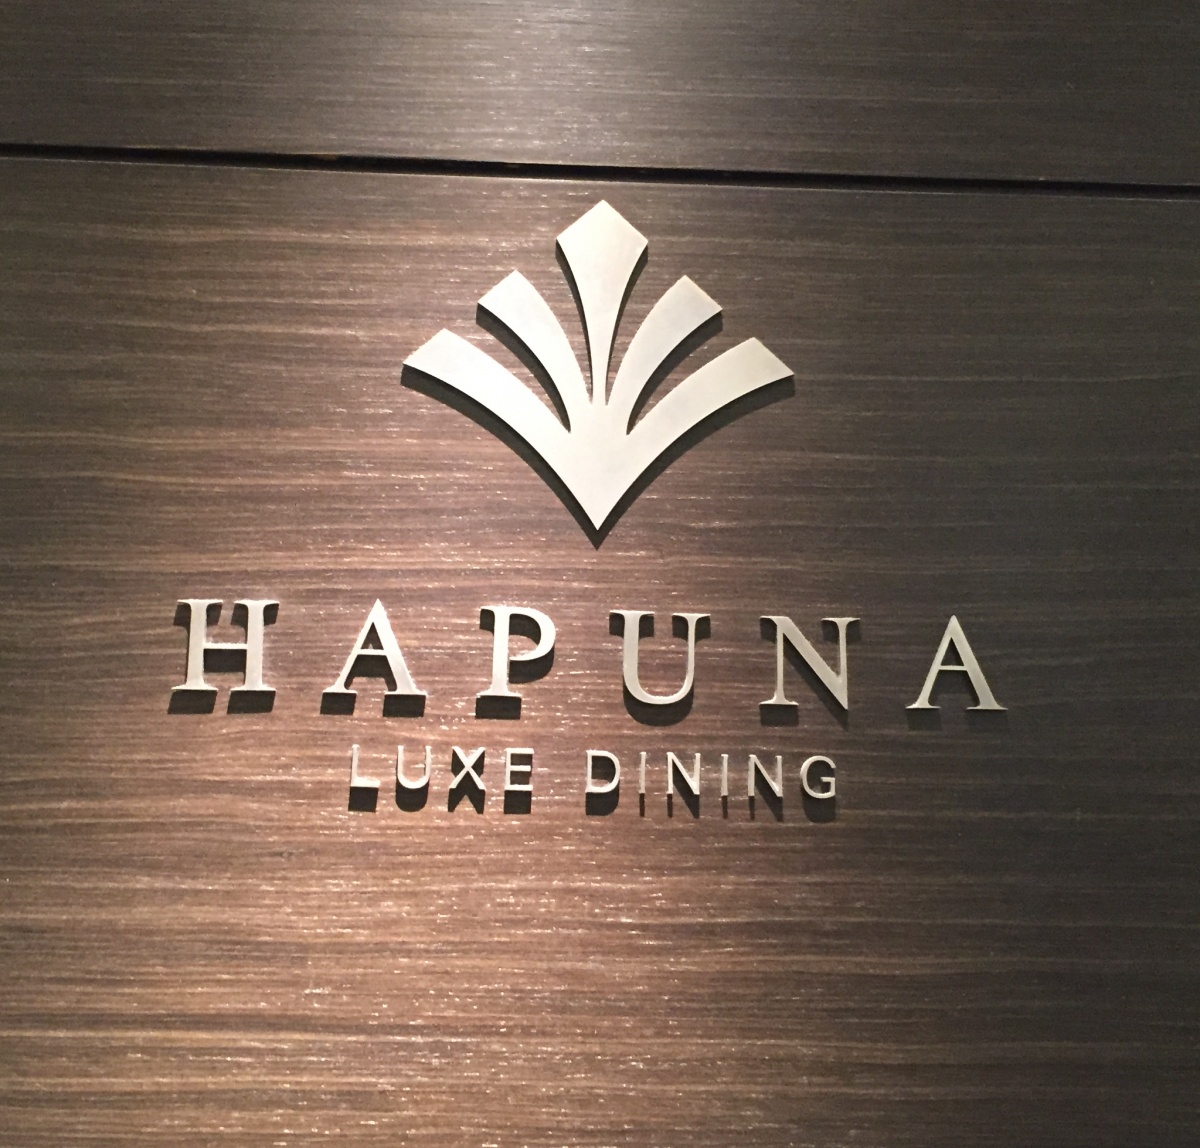 สายกินต้องห้ามพลาดกับบุฟเฟต์ขาปูห้องอาหาร HAPUNA LUXE DINING